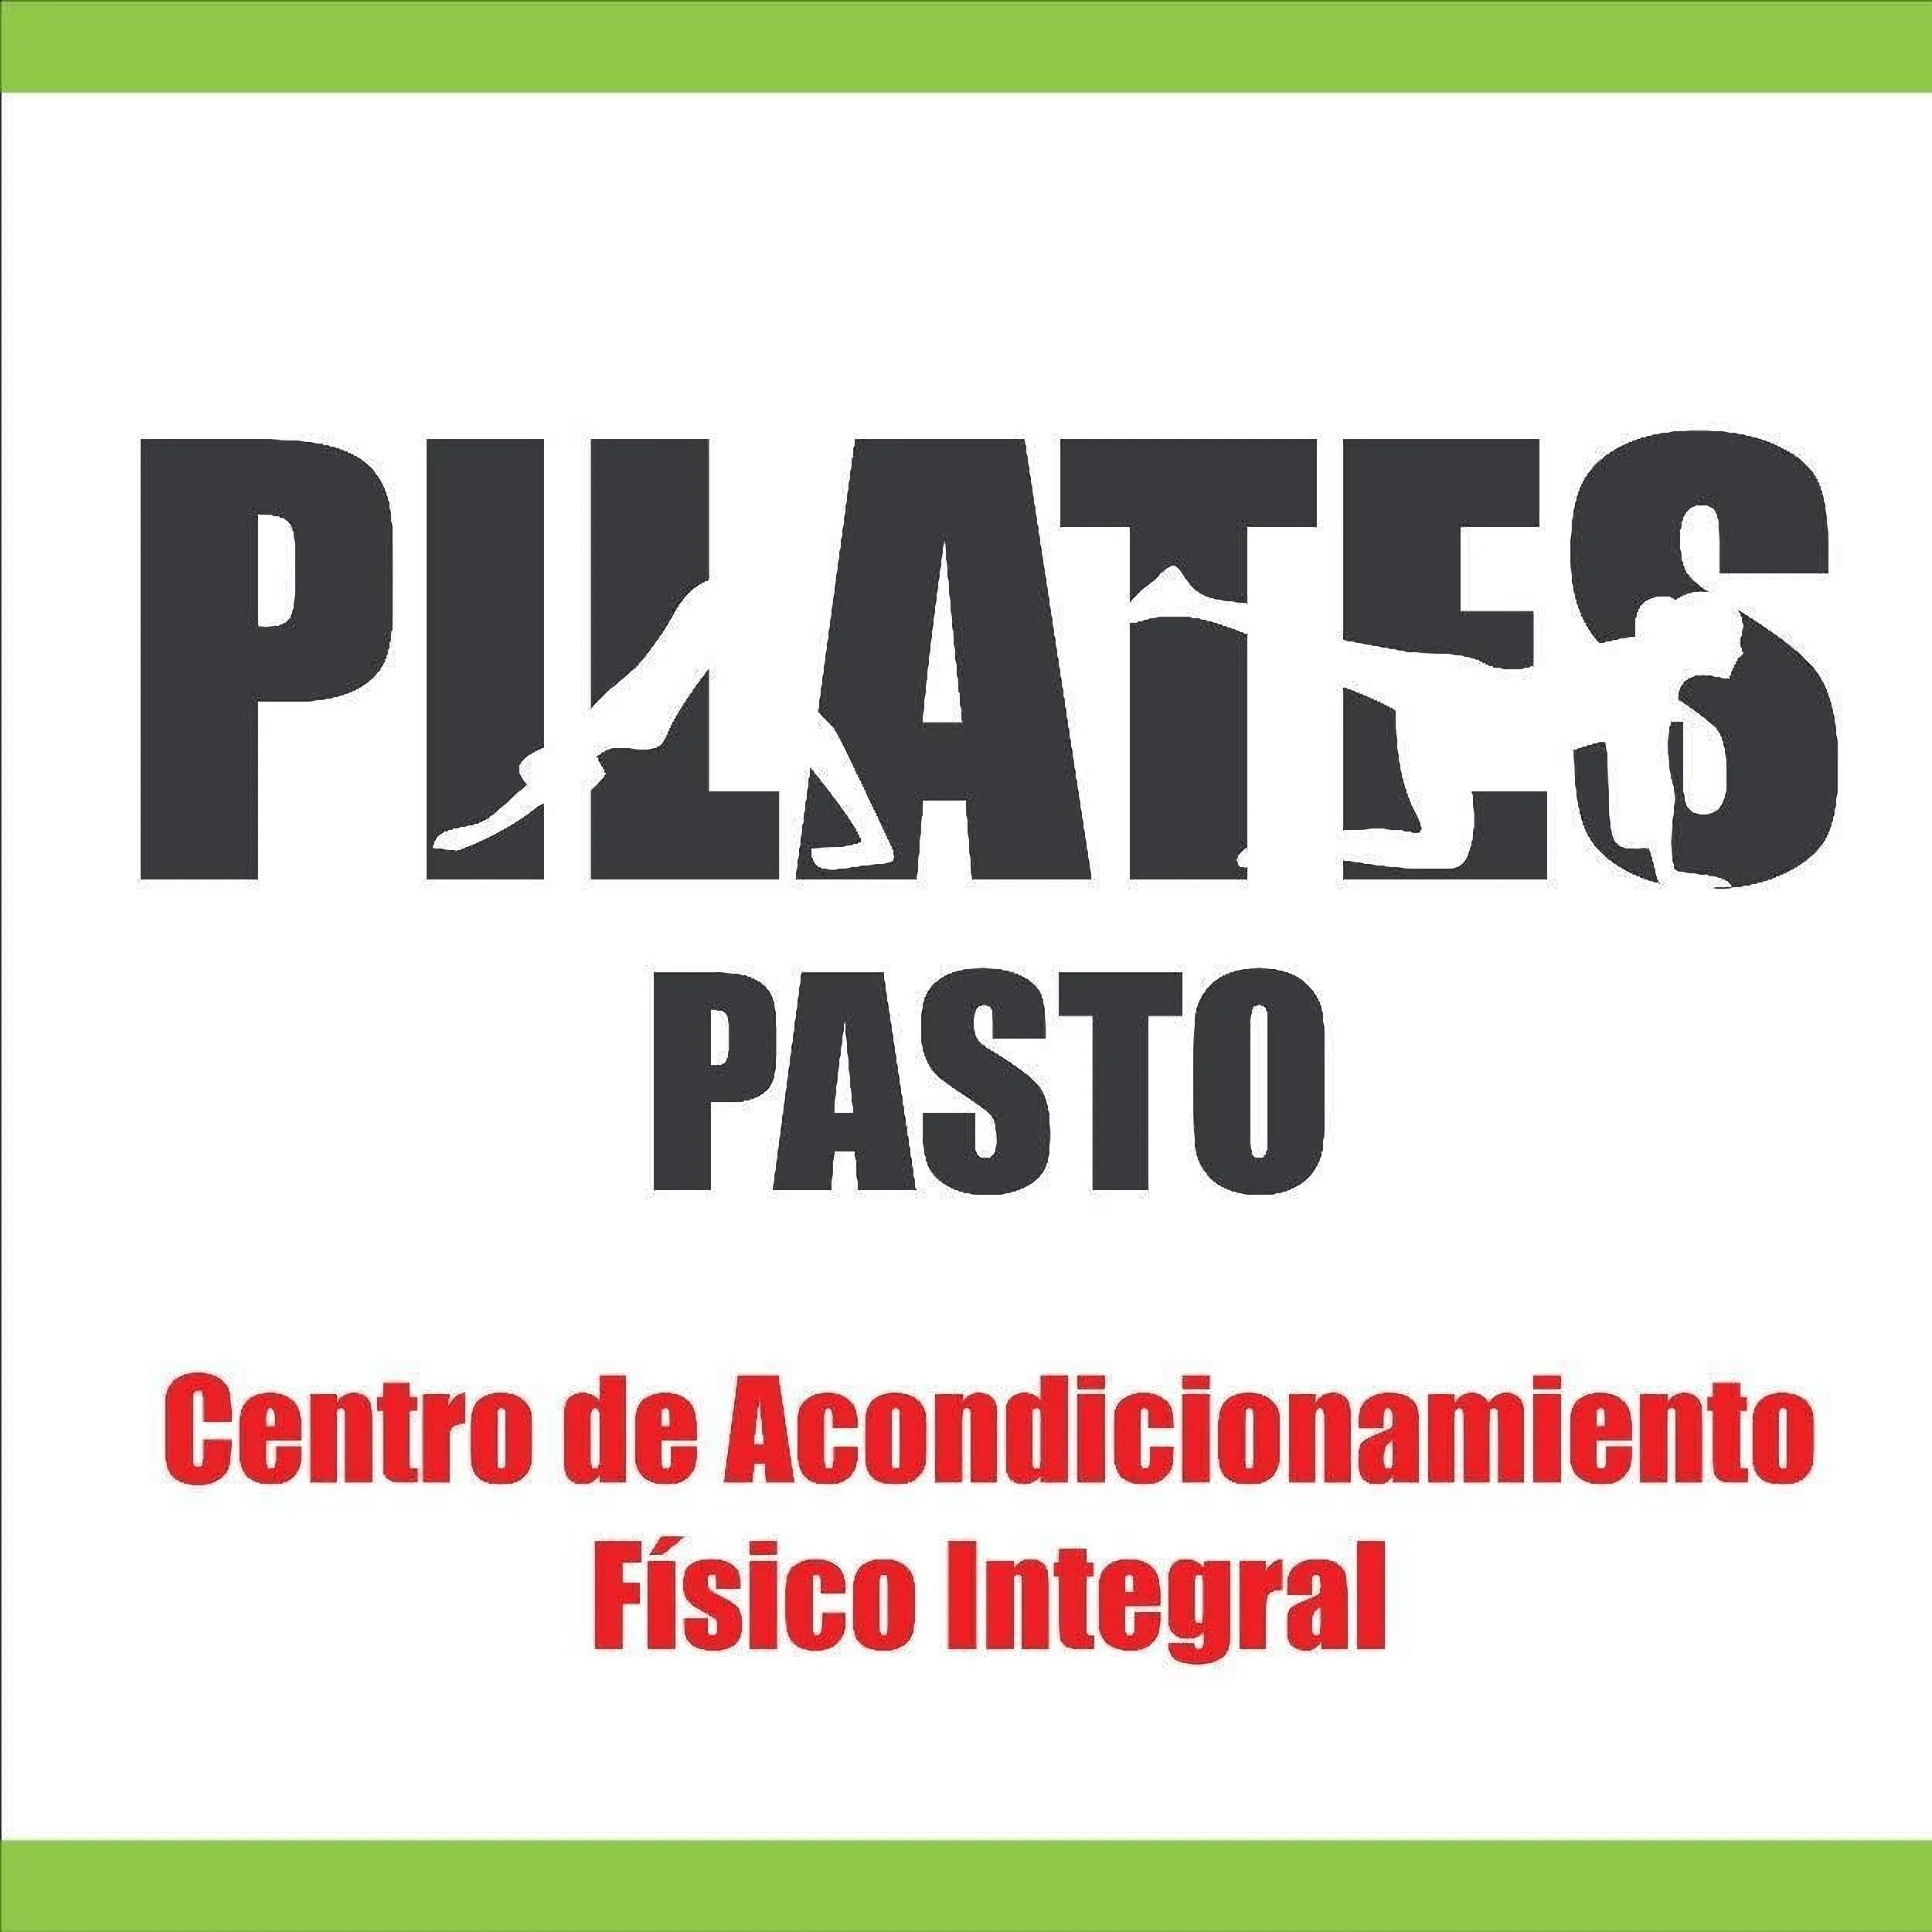 Pilates-pilates-pasto-11774